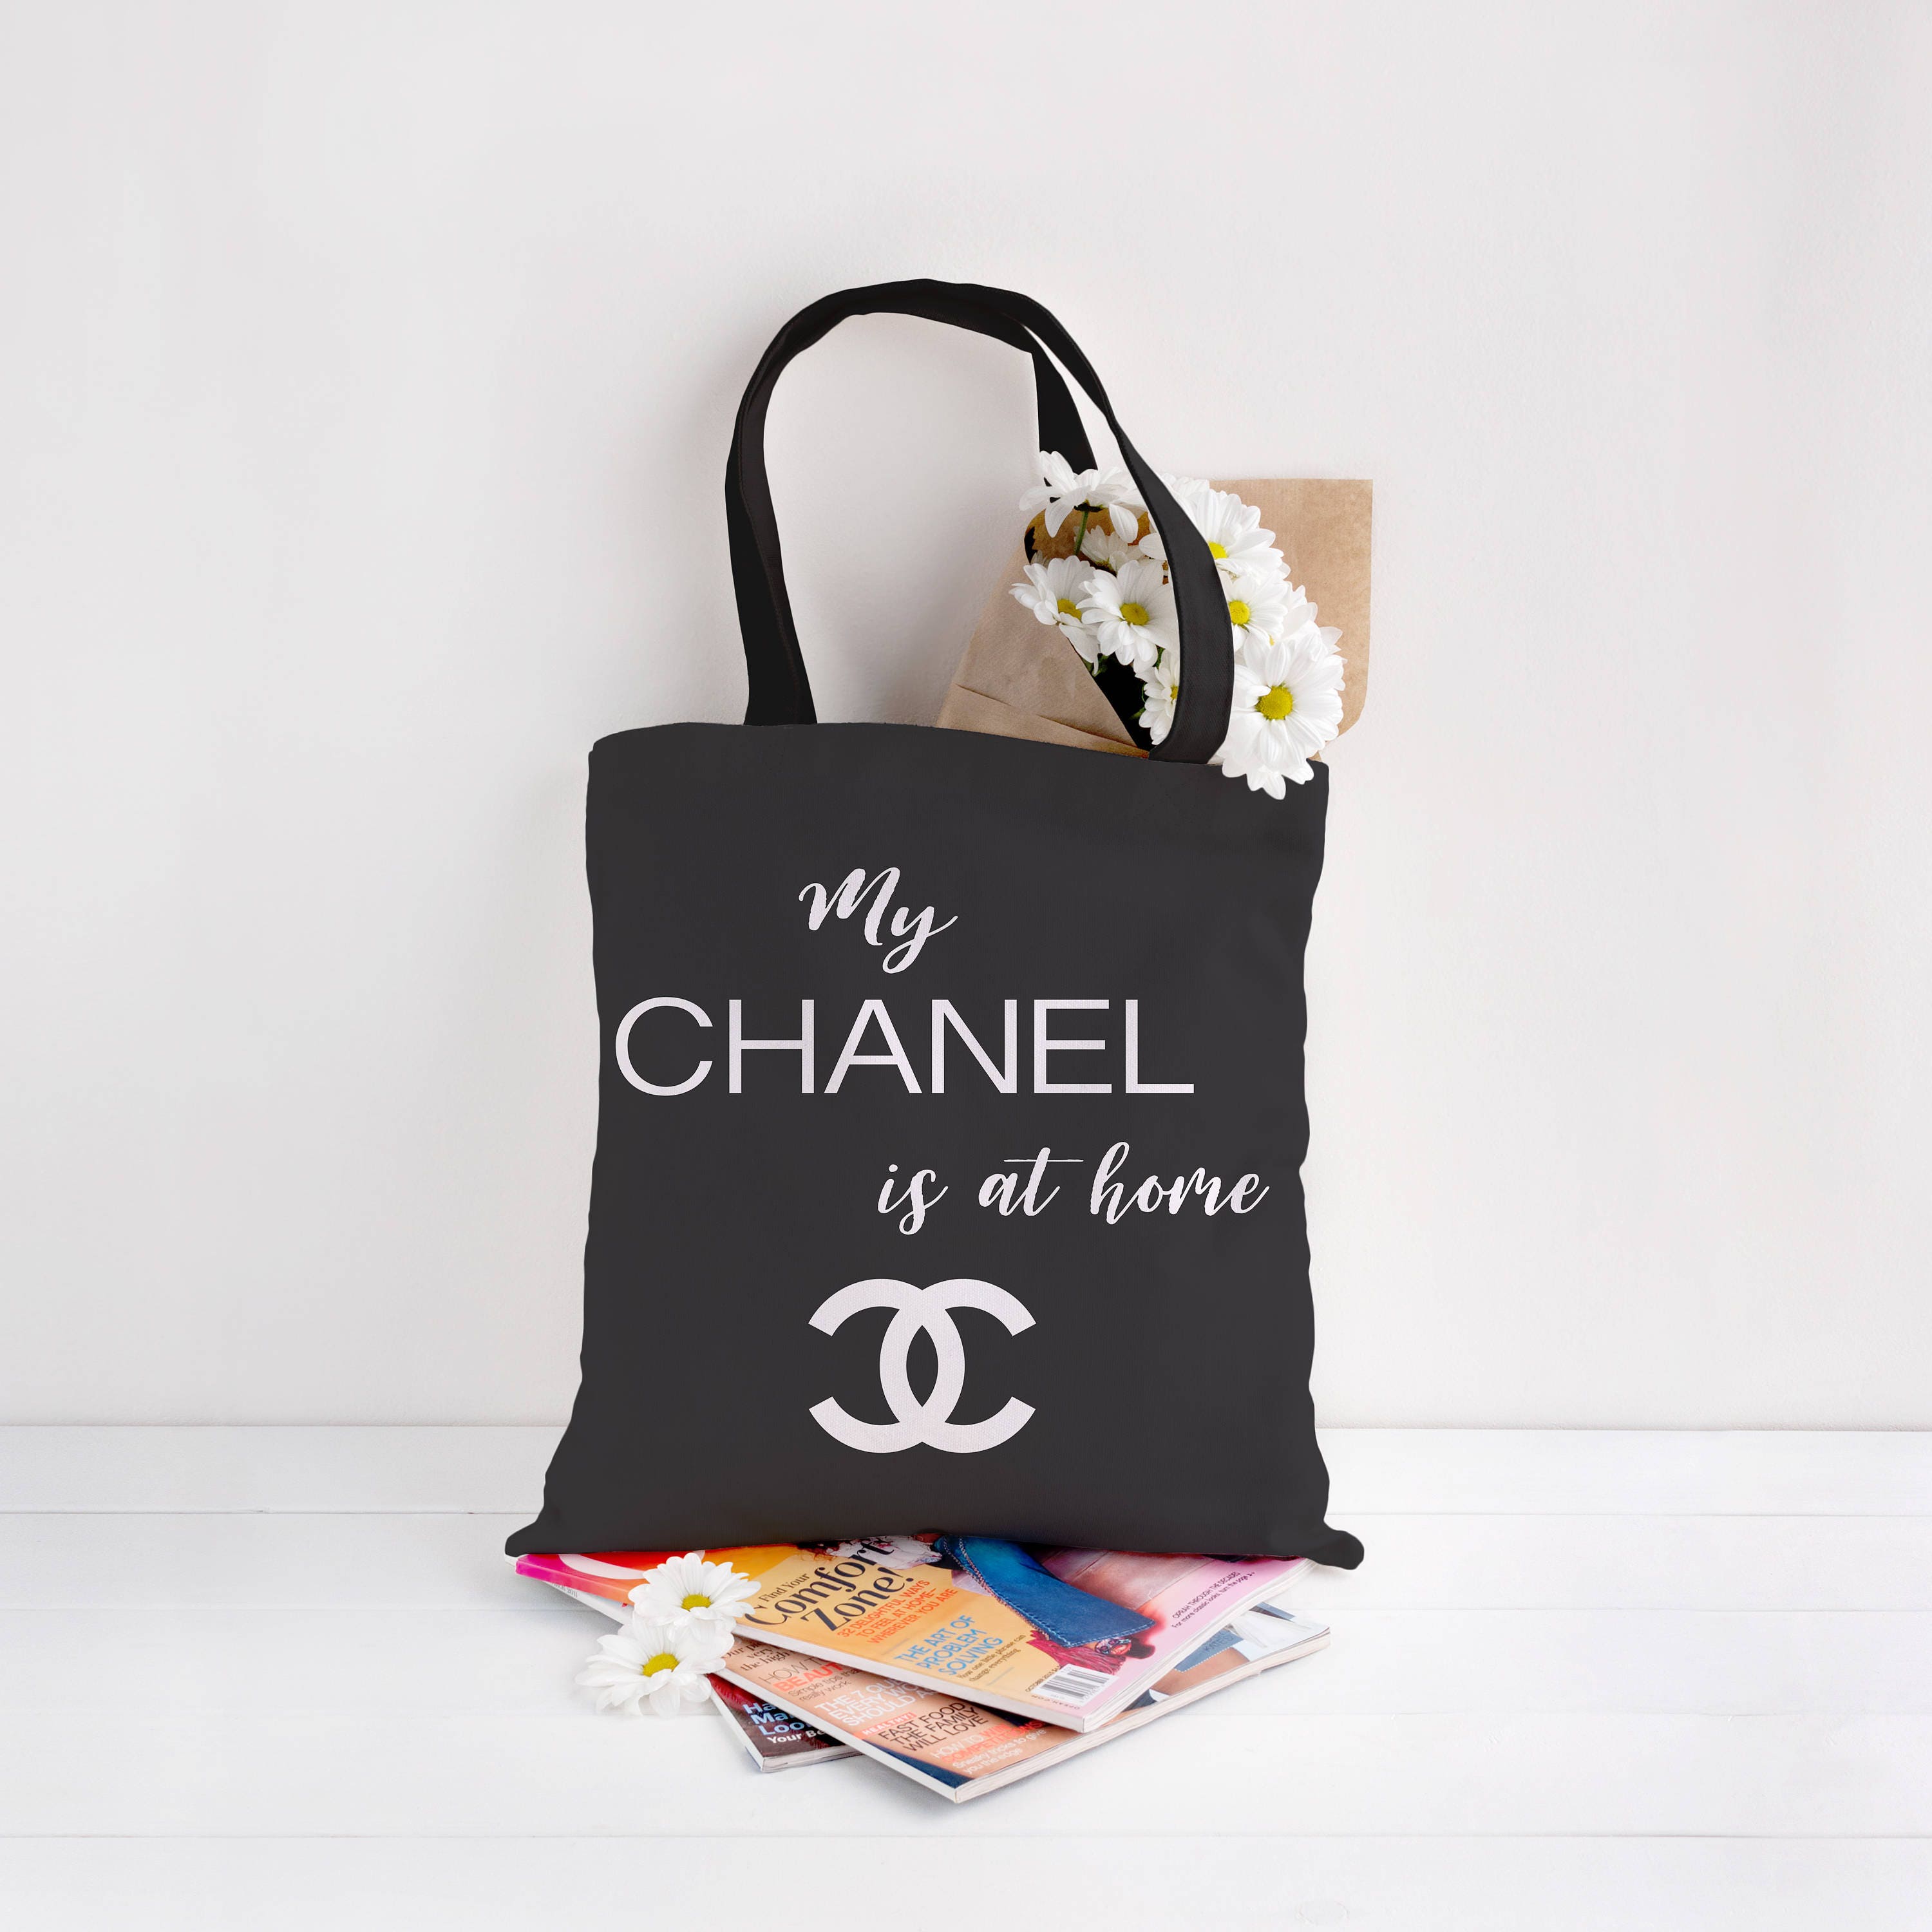 My Chanel is at home tote shopping bag handbag